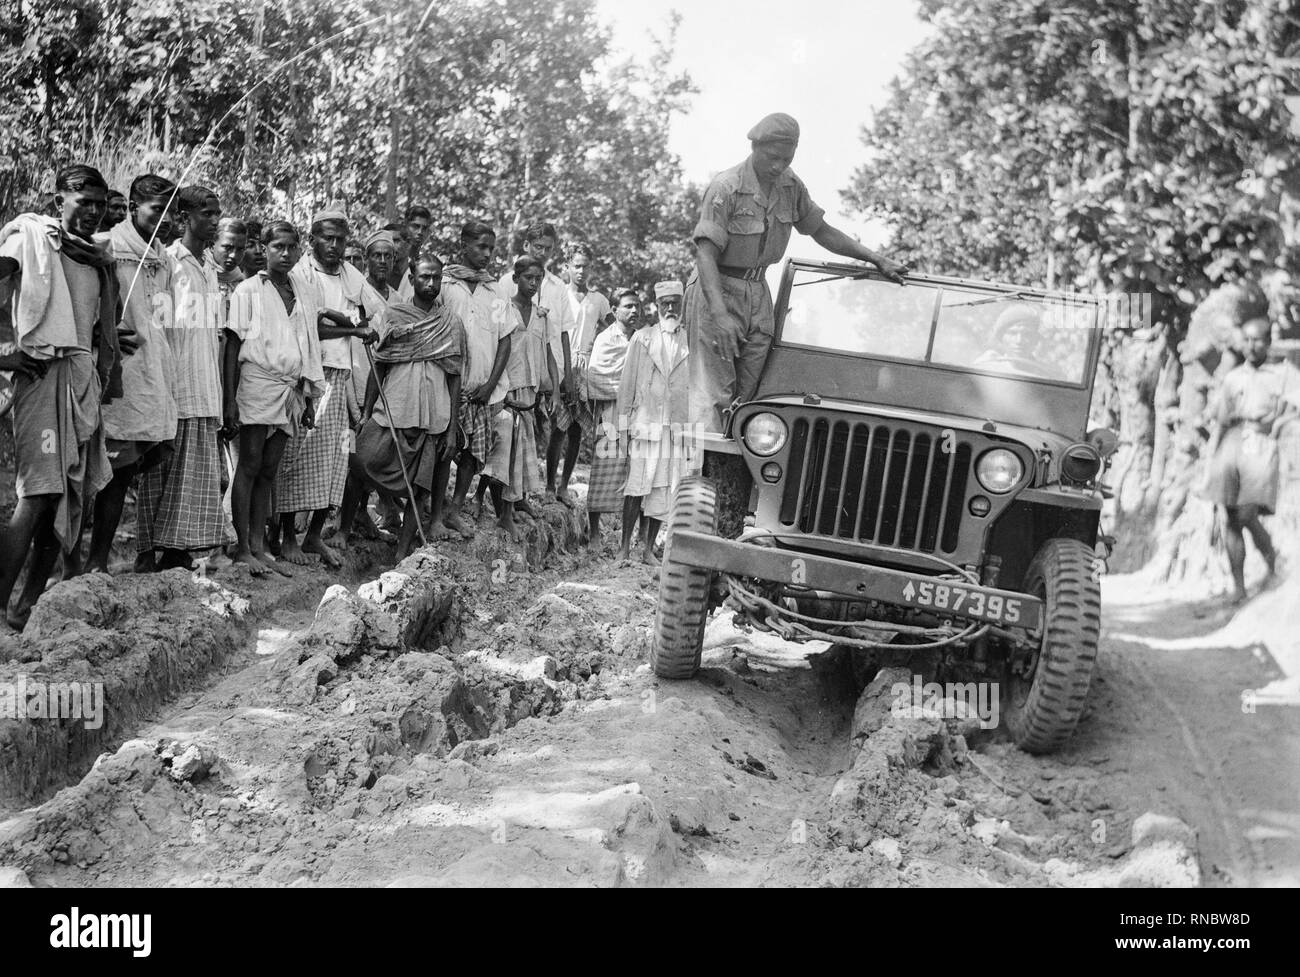 Ein Willys MB Jeep durch die indischen Truppen in der Mitte des zwanzigsten Jahrhunderts getestet. Lokale Leute schauen auf. Stockfoto